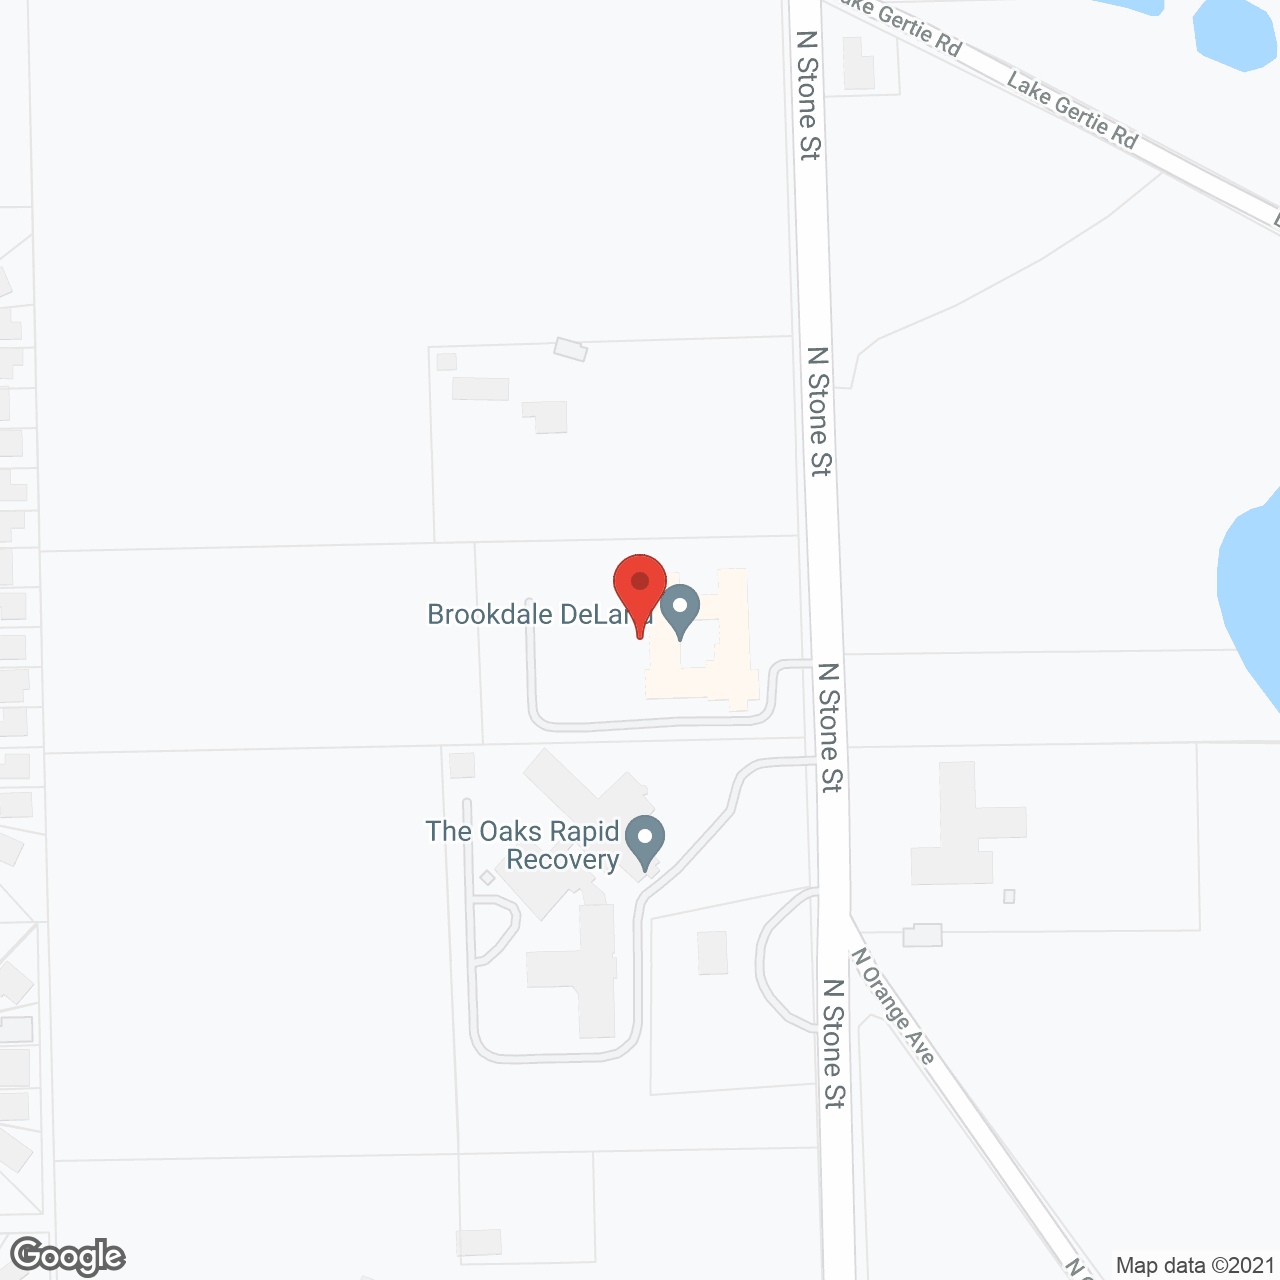 Brookdale DeLand in google map